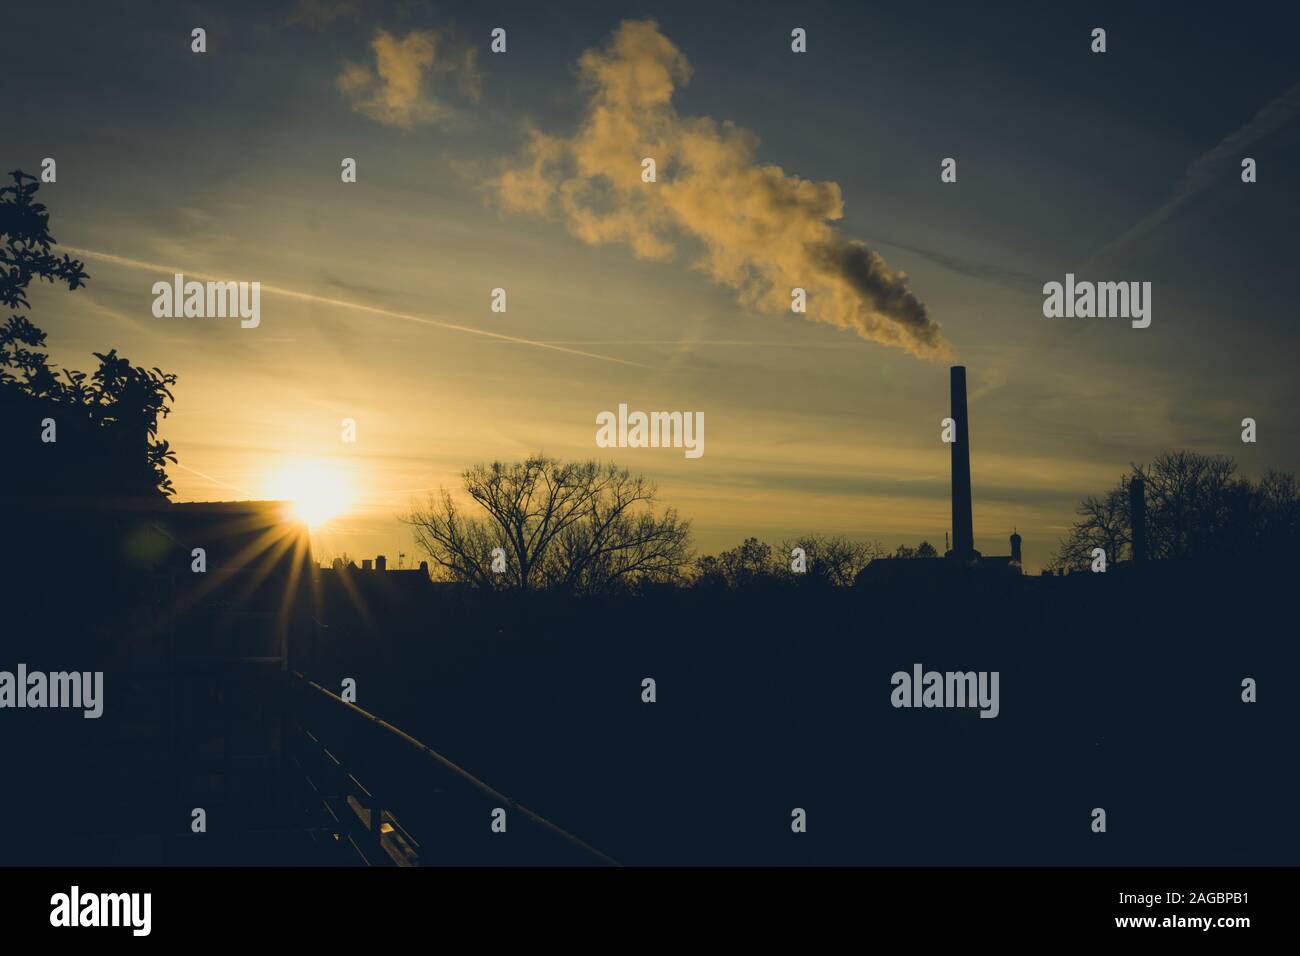 Image de cheminée industrielle et la fumée pendant le lever du soleil Banque D'Images